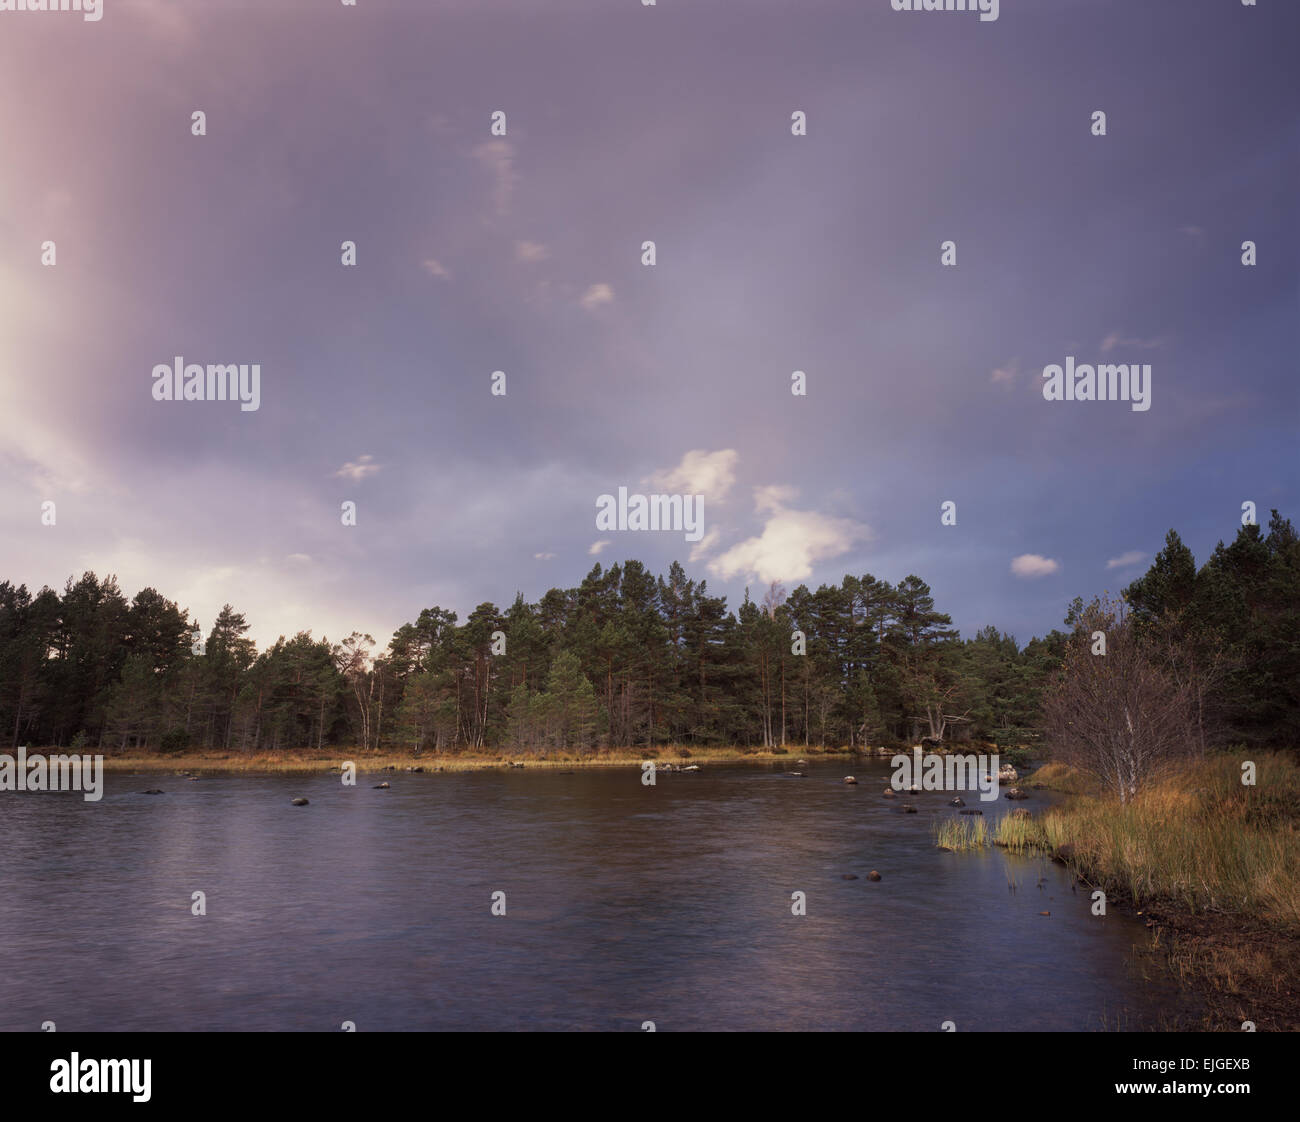 Dans le Loch Morlich, météo changeante Rothiemurchus Forest, Aviemore, Scotland, UK Banque D'Images